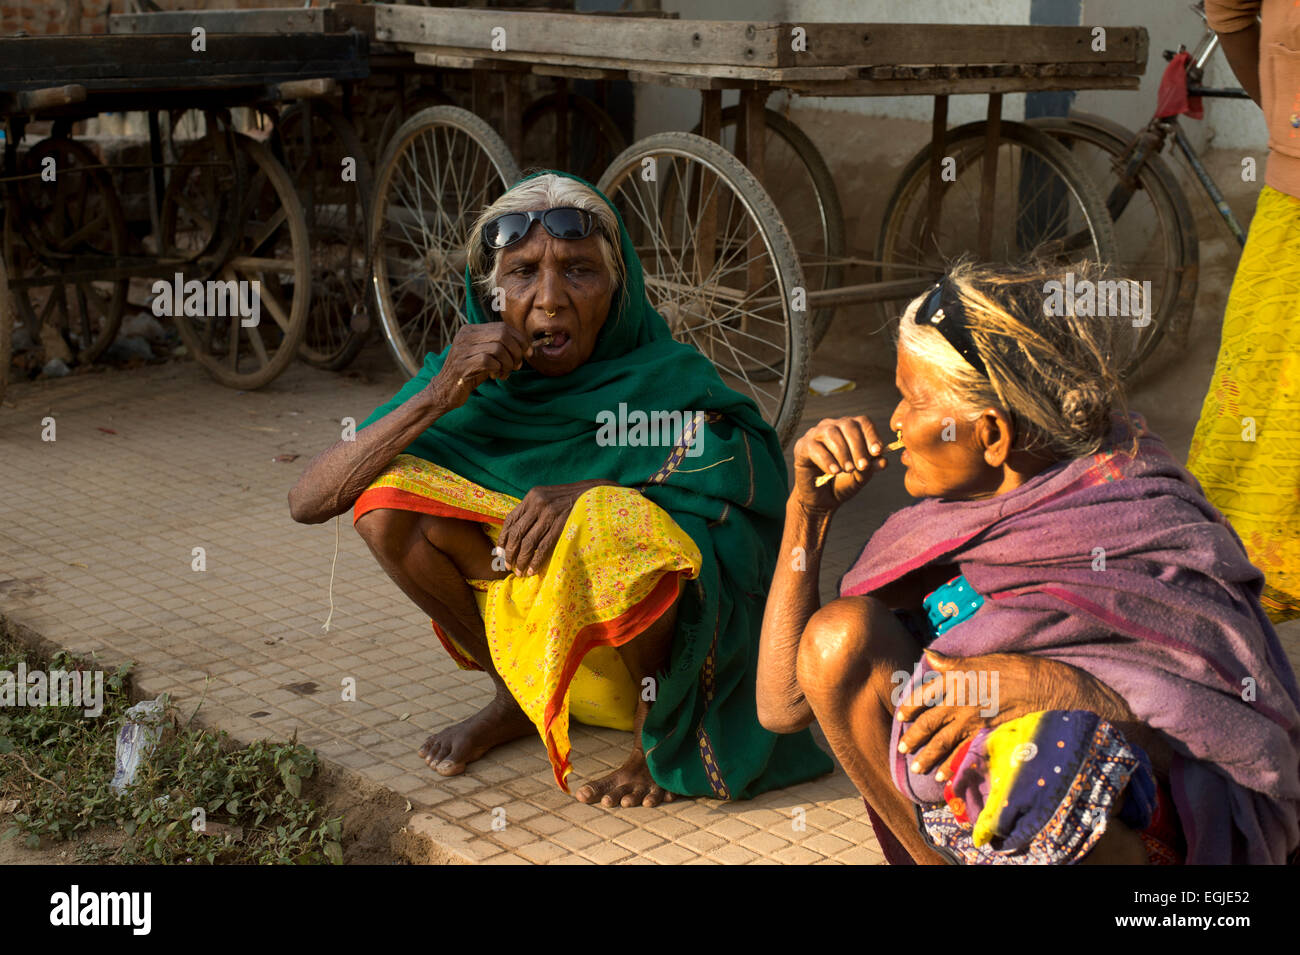 Indien-2014. Orissa. Bwanipatna. Nach einer Kataraktoperation reinigen zwei Frauen ihre Zähne mit Zweigen. Stockfoto